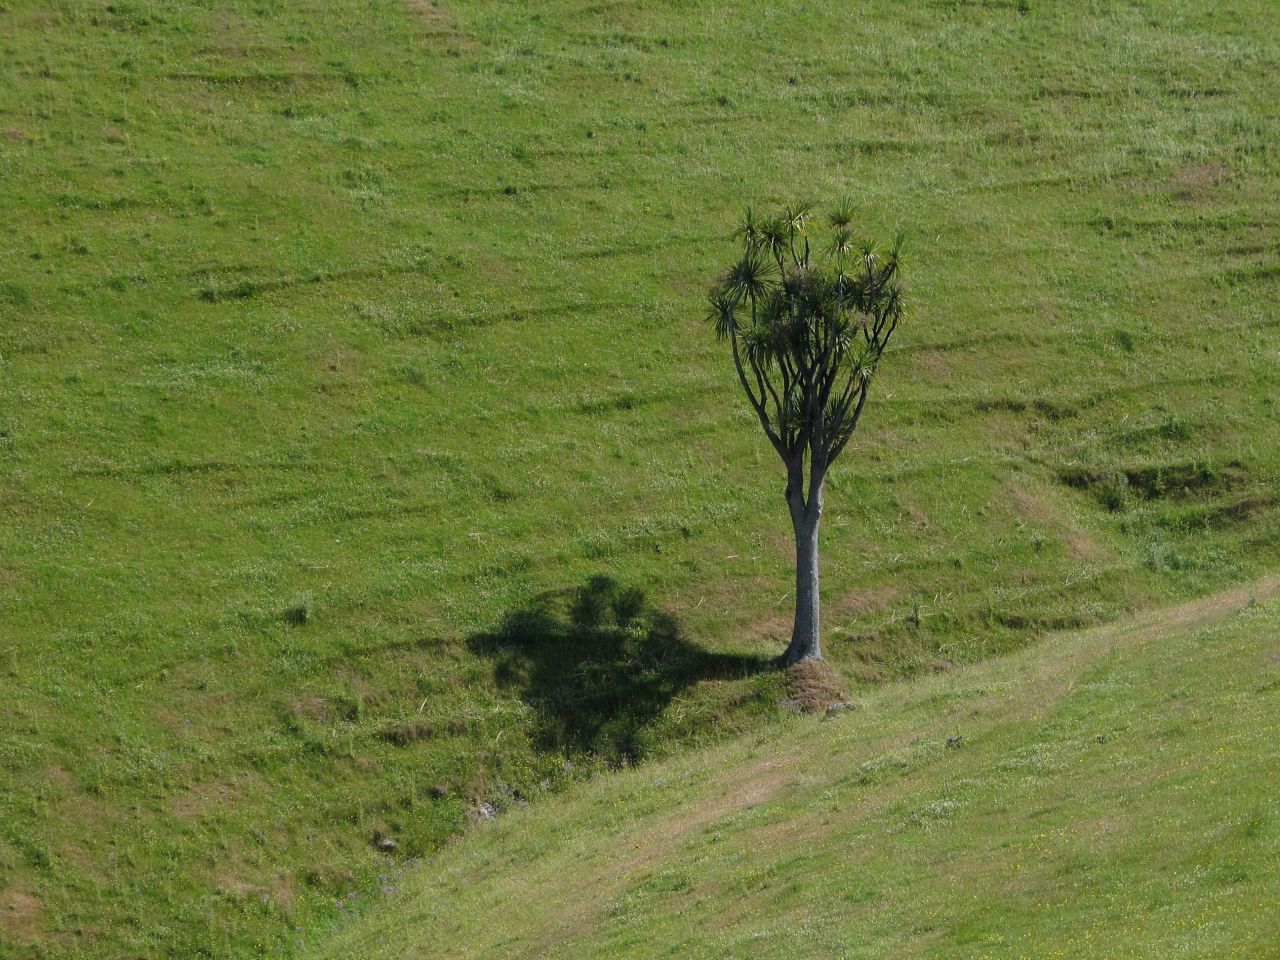 fotka / image semtam muzete i potkat strom, New Zealand